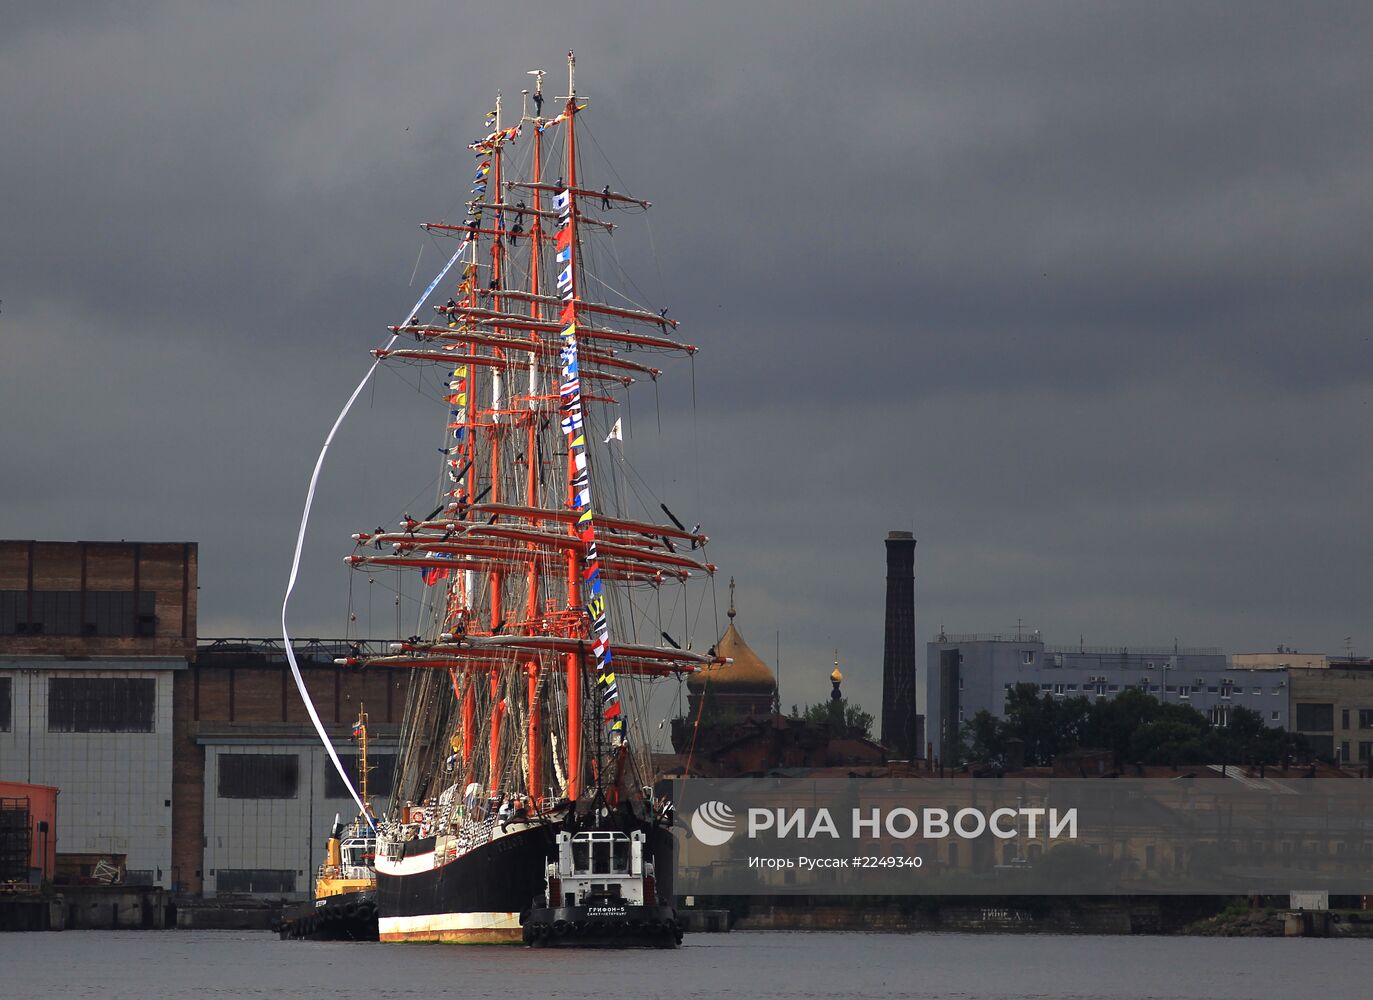 Прибытие парусника "Седов" в Санкт-Петербург